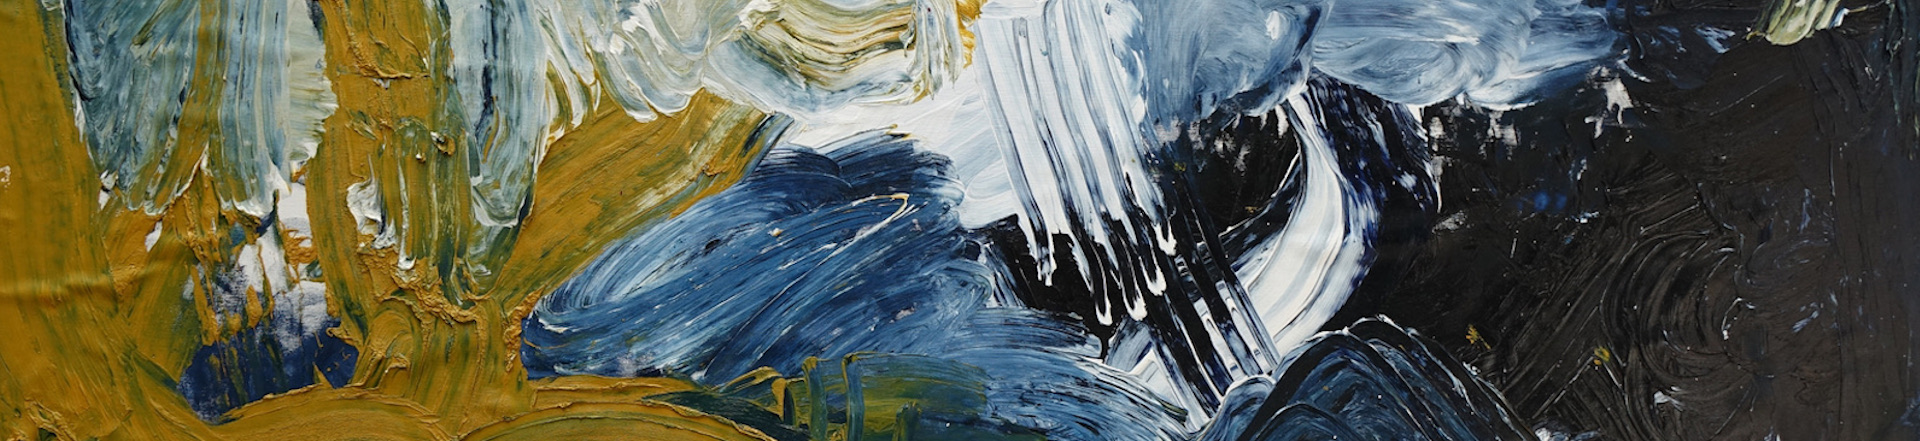 Gemälde mit den Händen und gelber, blauer, weißer und schwarzer Farbe auf einer Leinwand gemalt